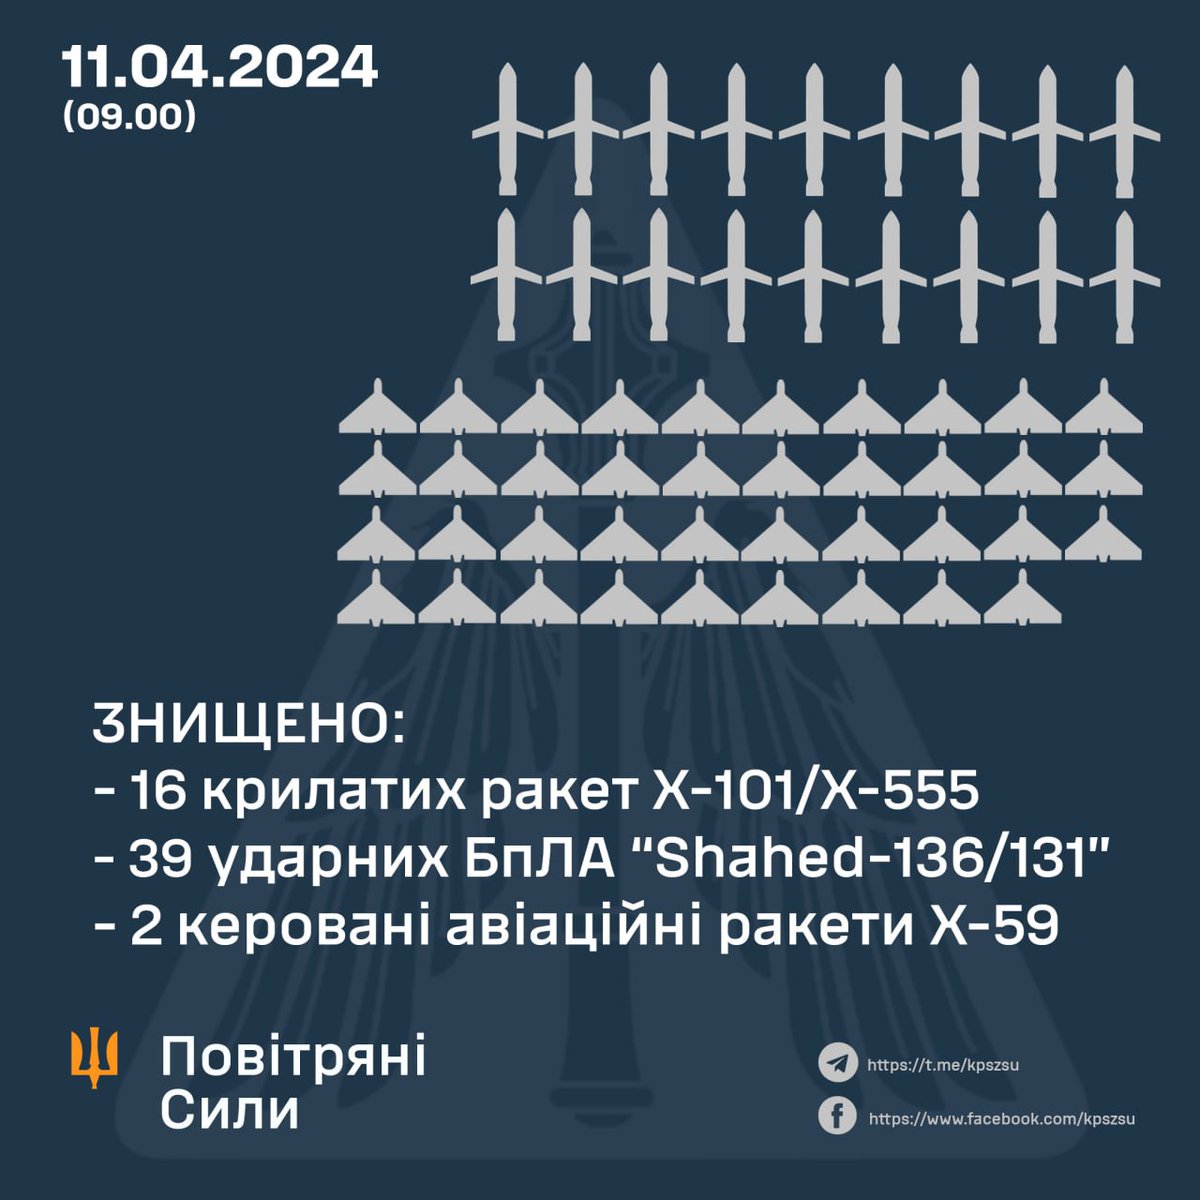 Das ist das Ergebnis des russischen Angriffs heute .. 57 Flugobjekte wurden abgeschossen.